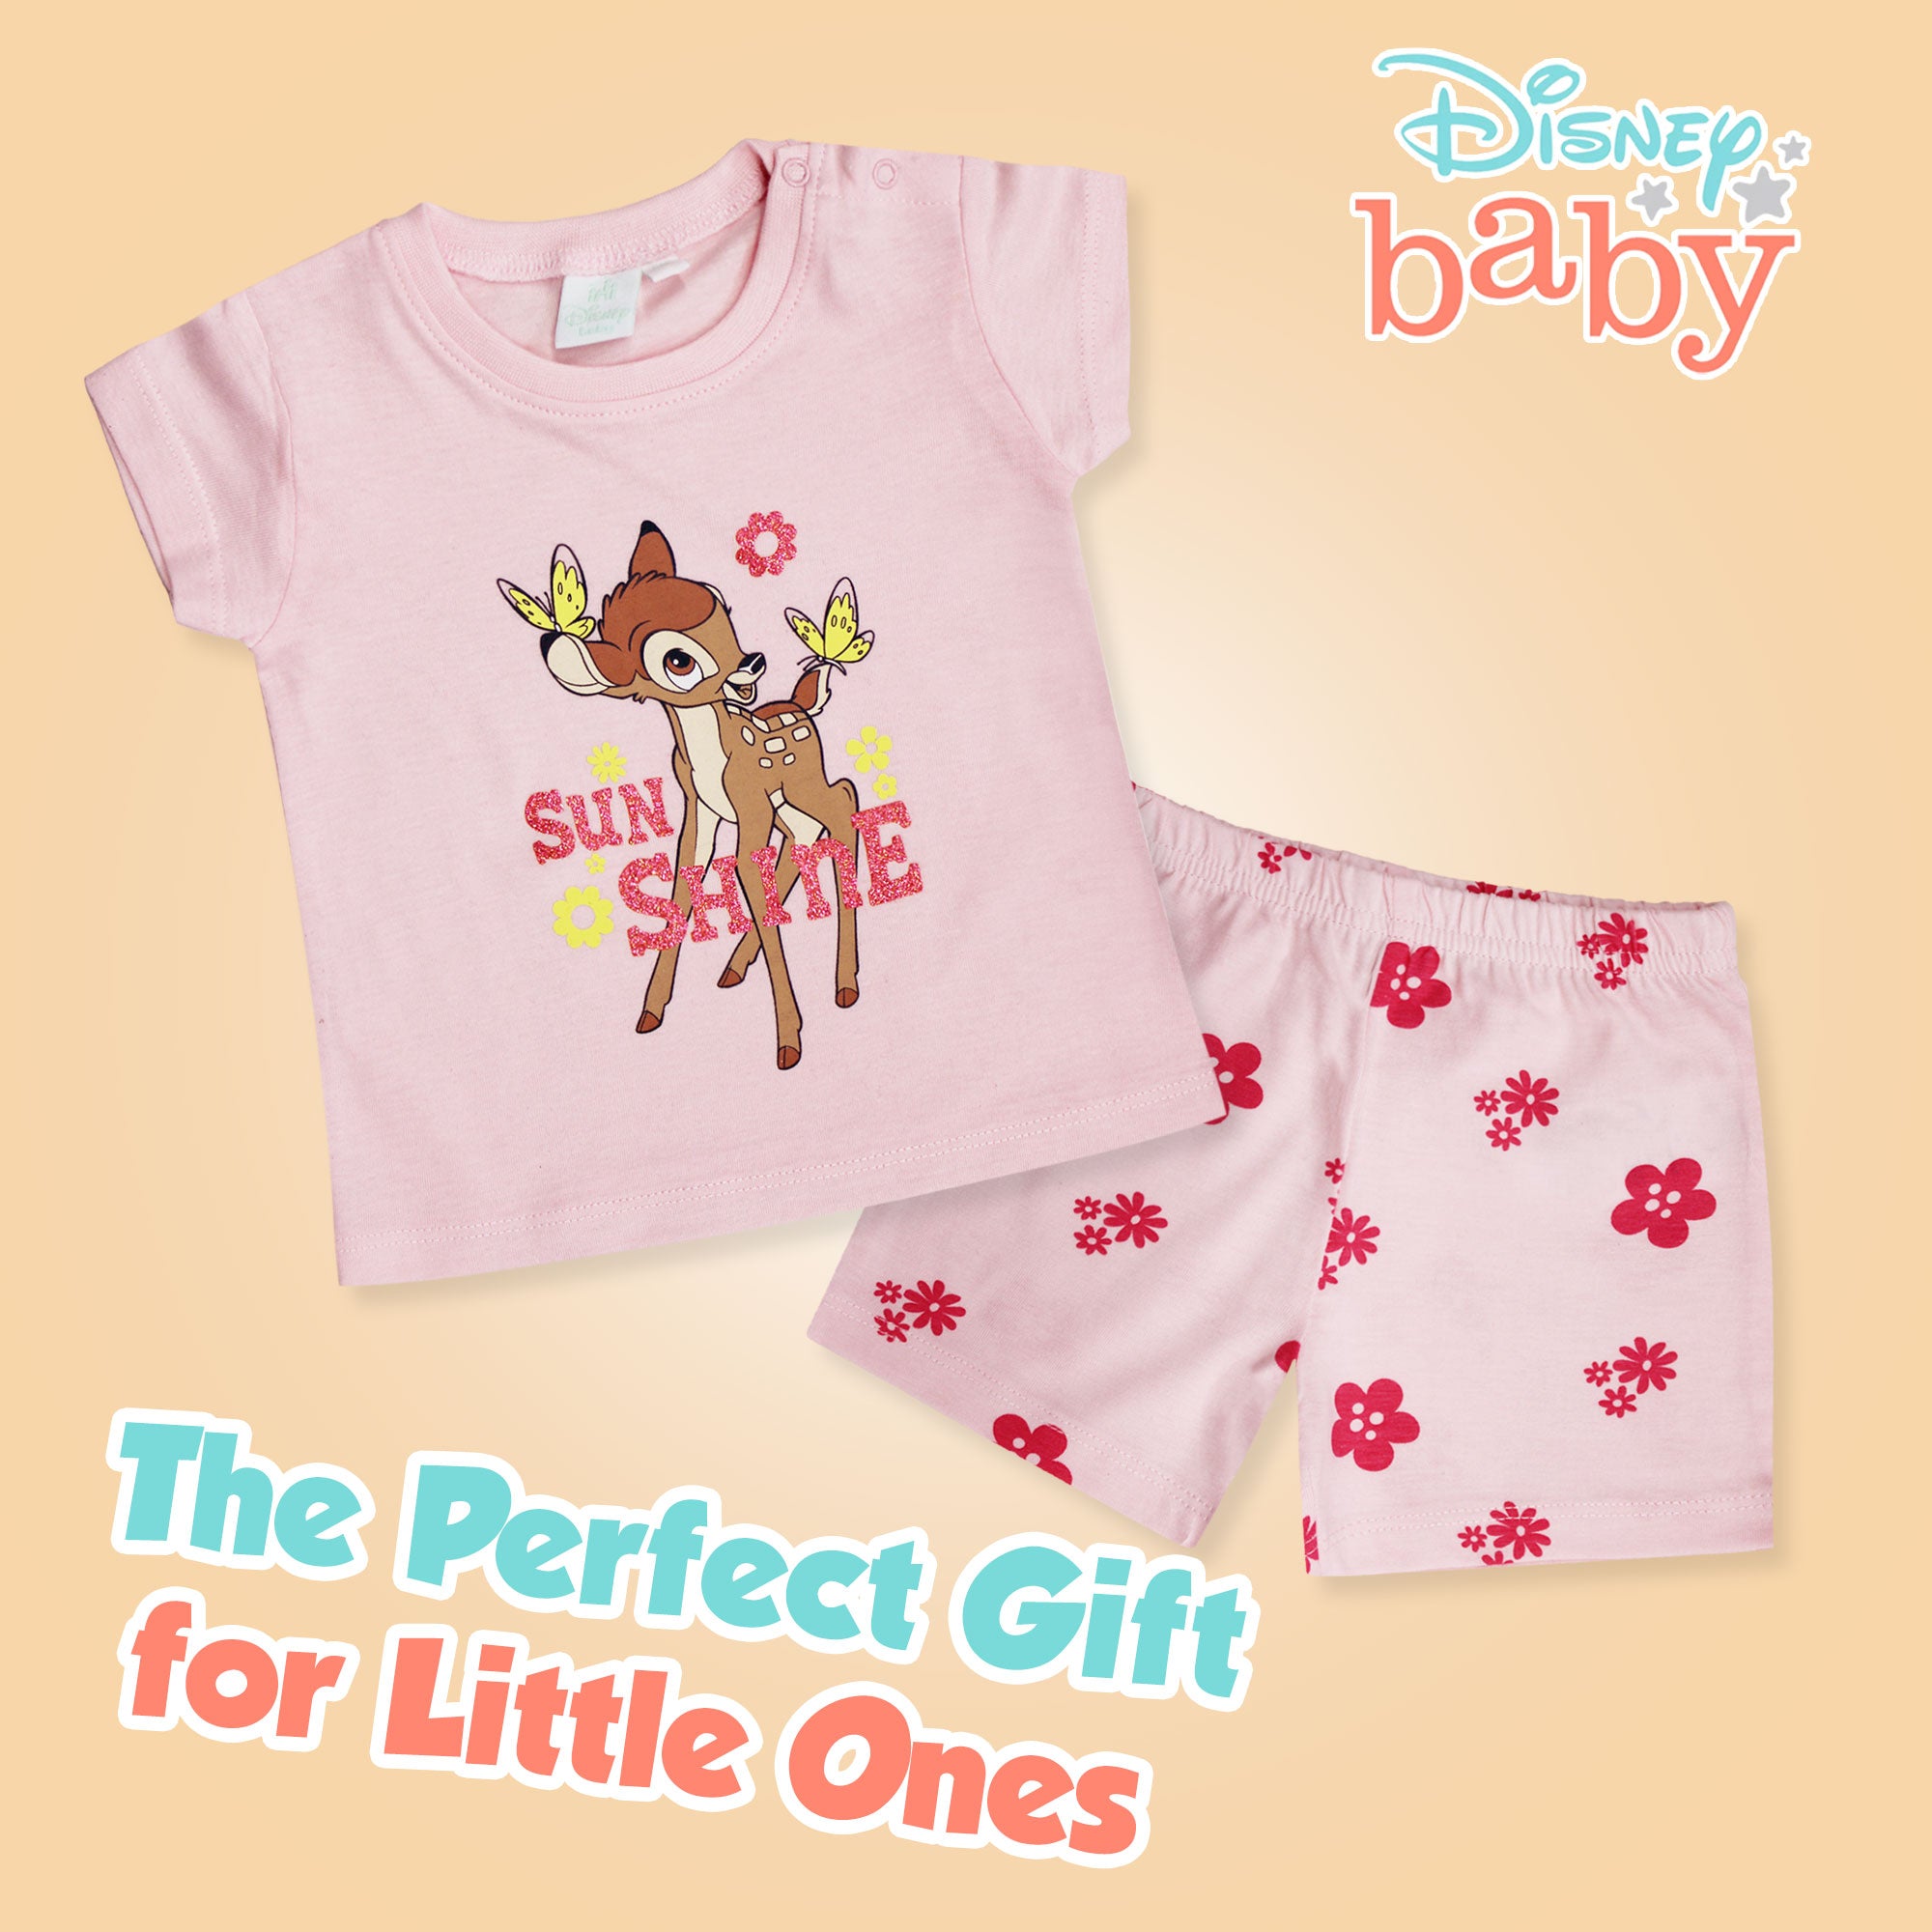 Completo Disney Bambi in cotone estivo maglia neonato bambina 6583